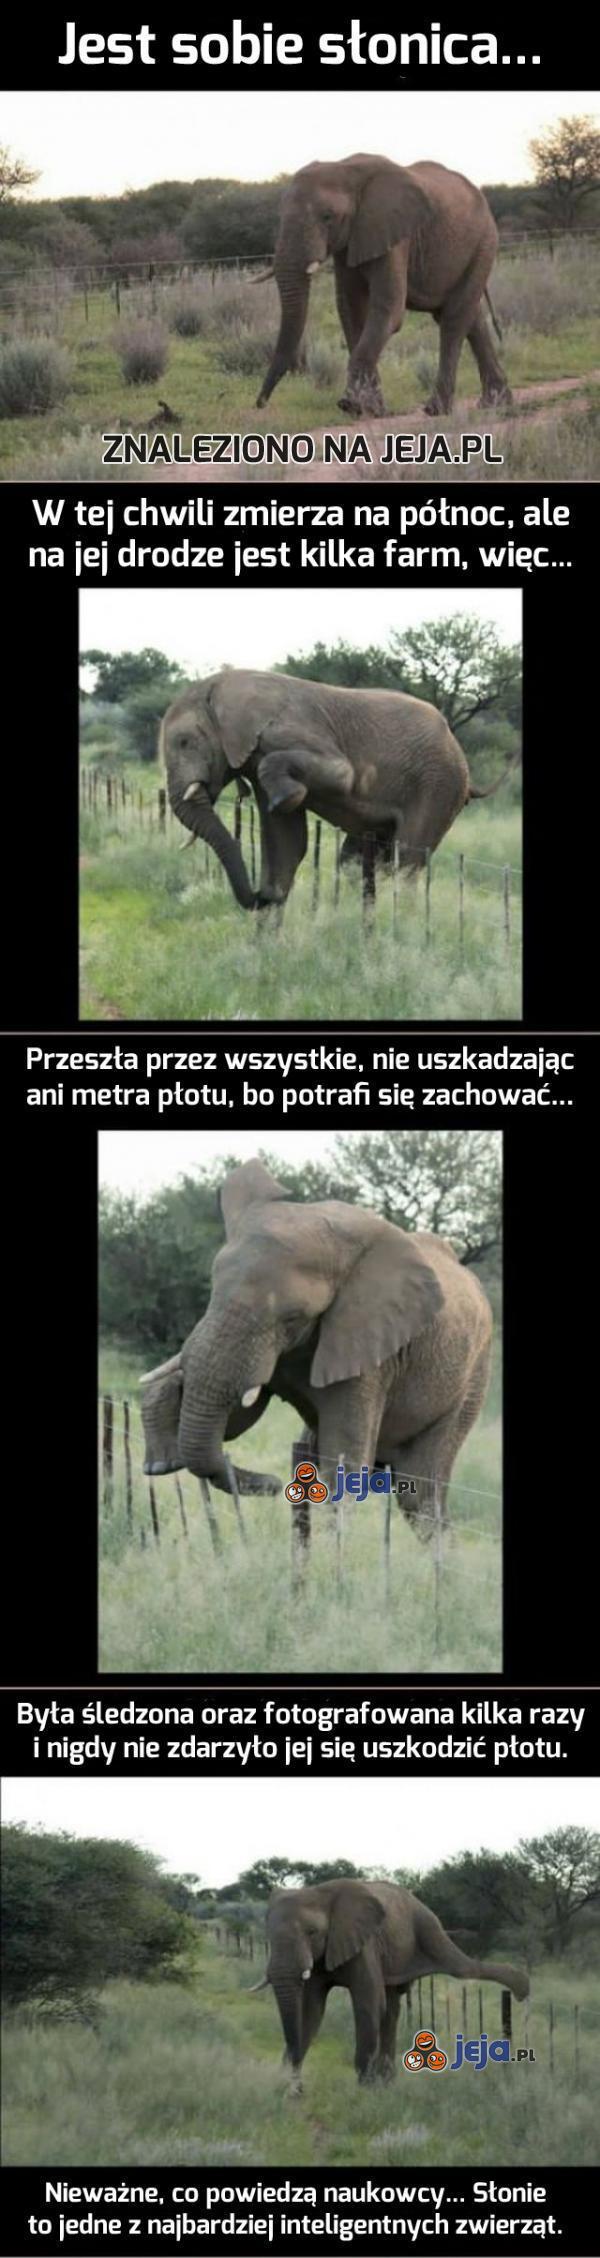 Słonie nie są głupie...